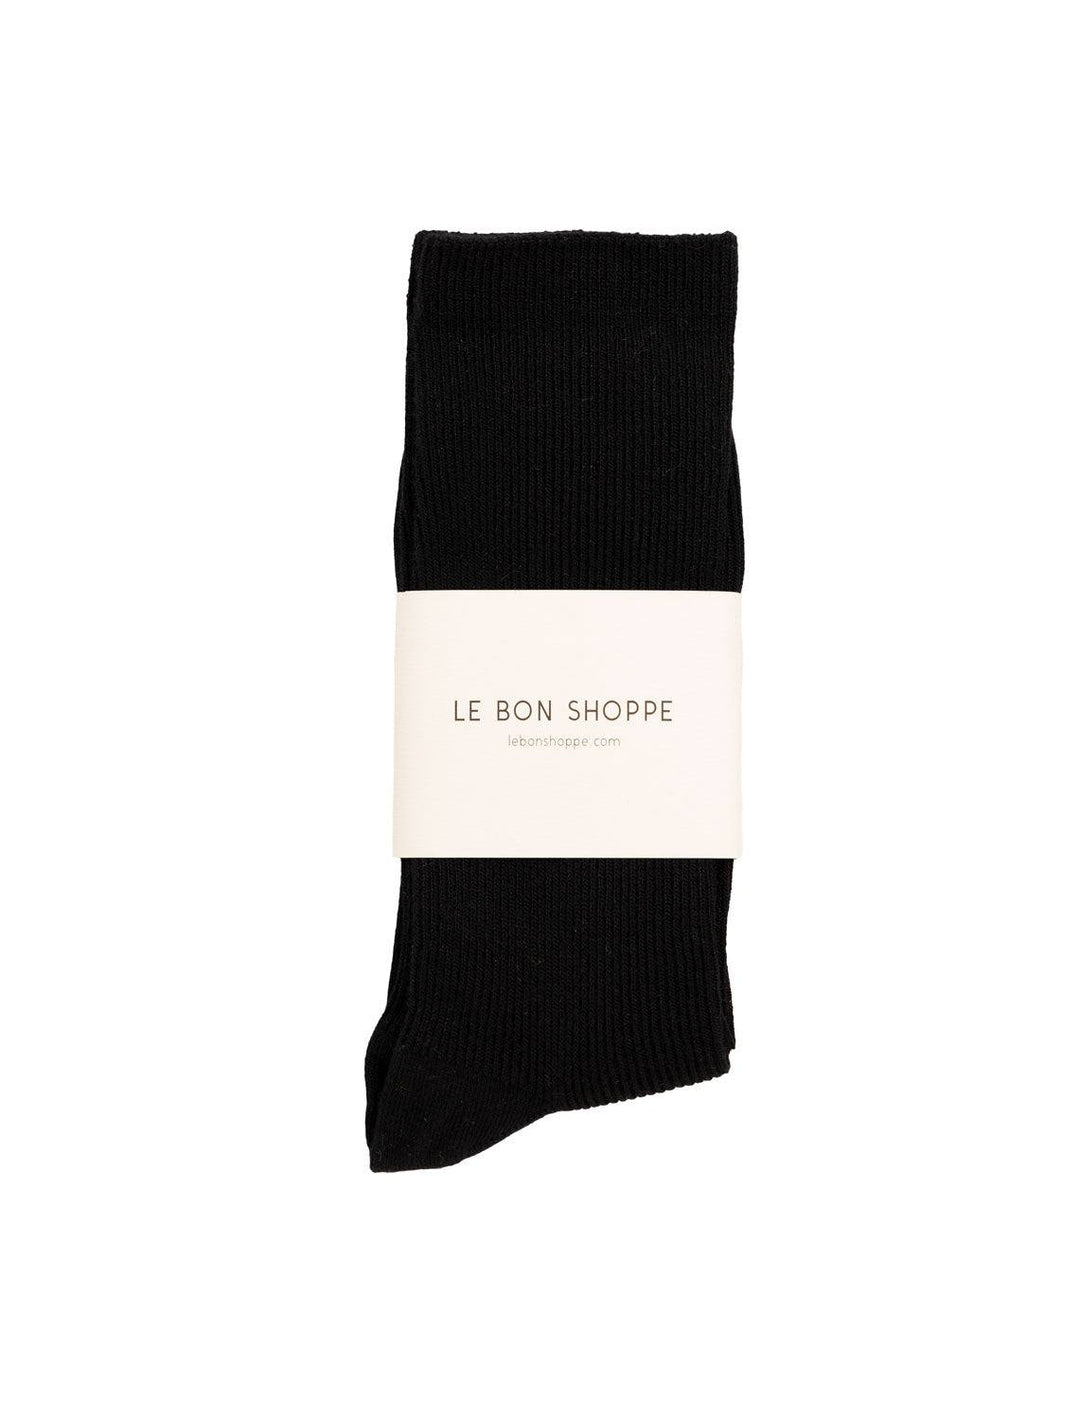 Le Bon Shoppe trouser socks in black - Twigs